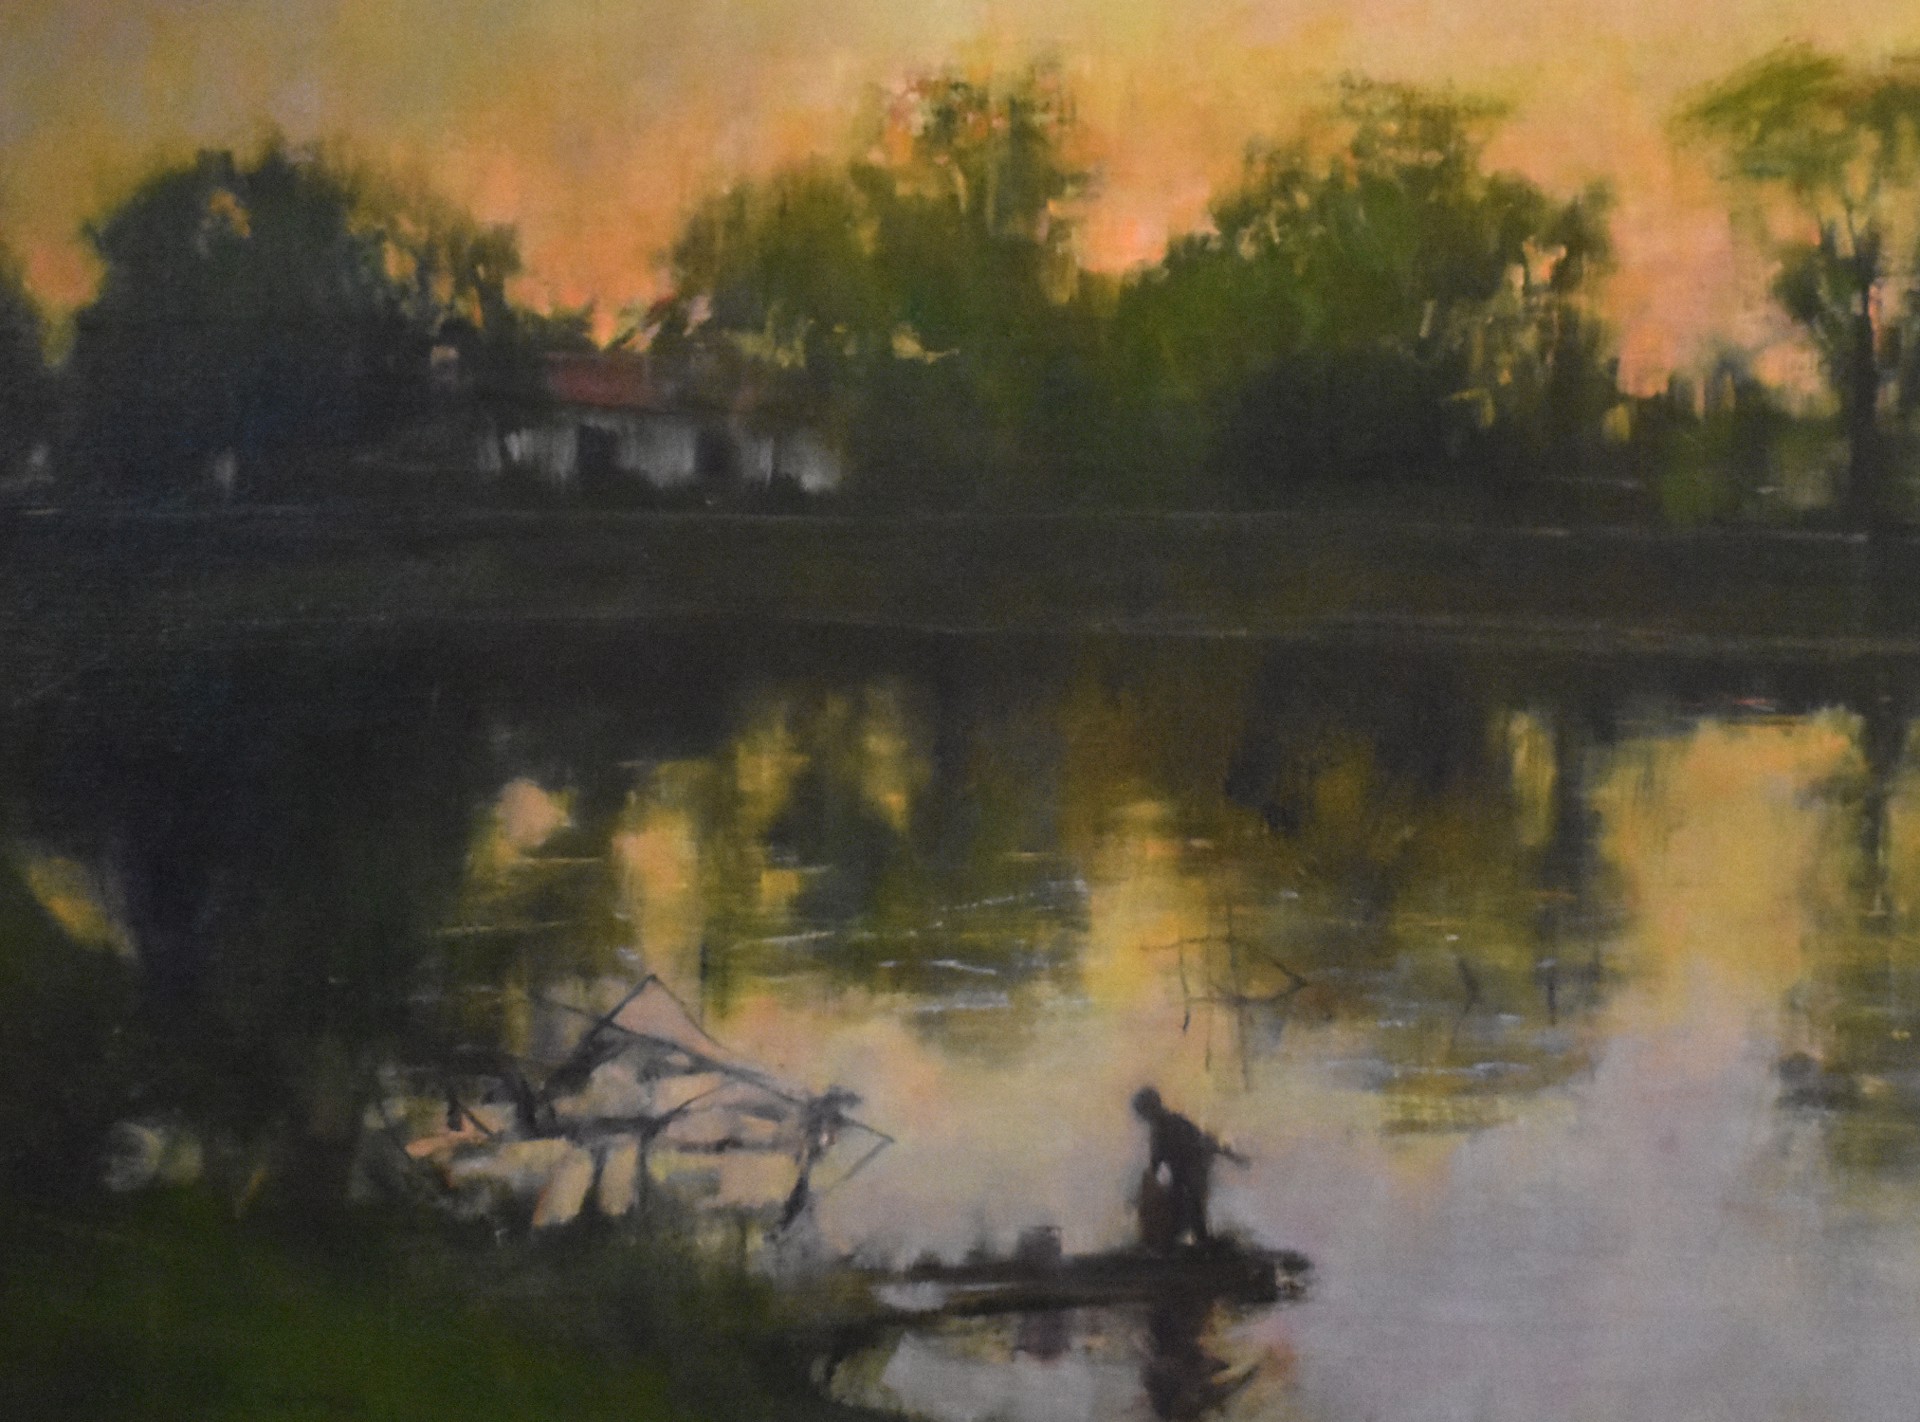 Shadowy Figure on Pond by Curt Hanson